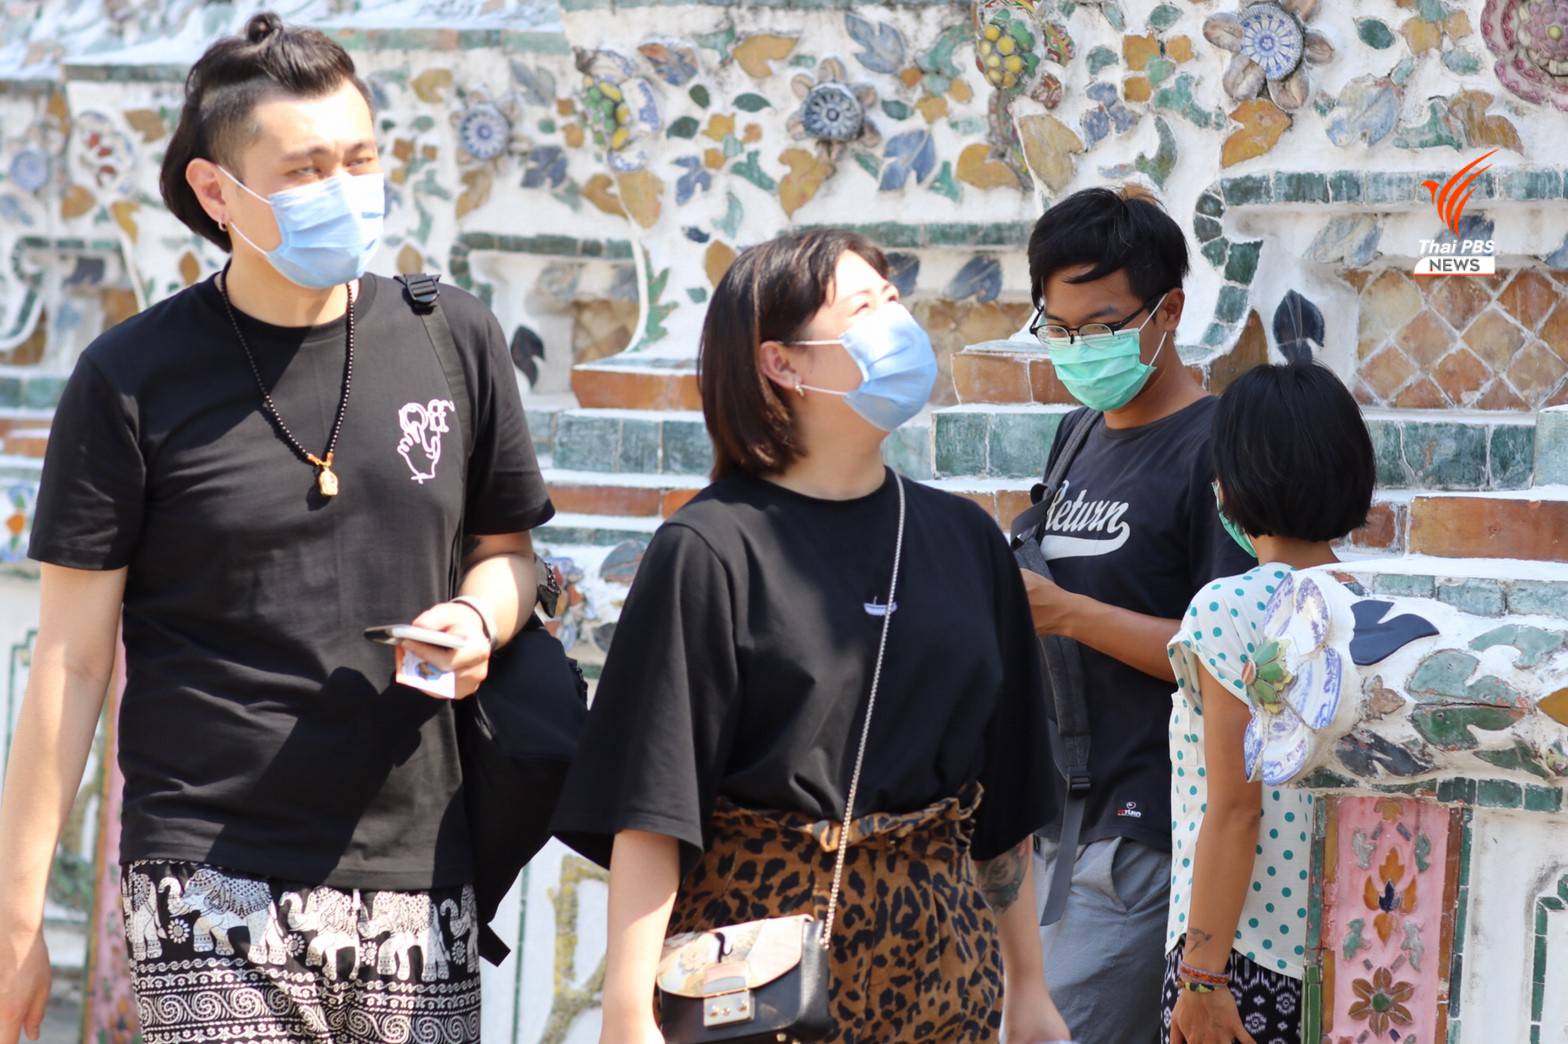 นักท่องเที่ยวชาวไทยและเอเชียส่วนใหญ่มักจะสวมหน้ากากอนามัยเพื่อป้องกันการแพร่ระบาดของไวรัสCOVID-19